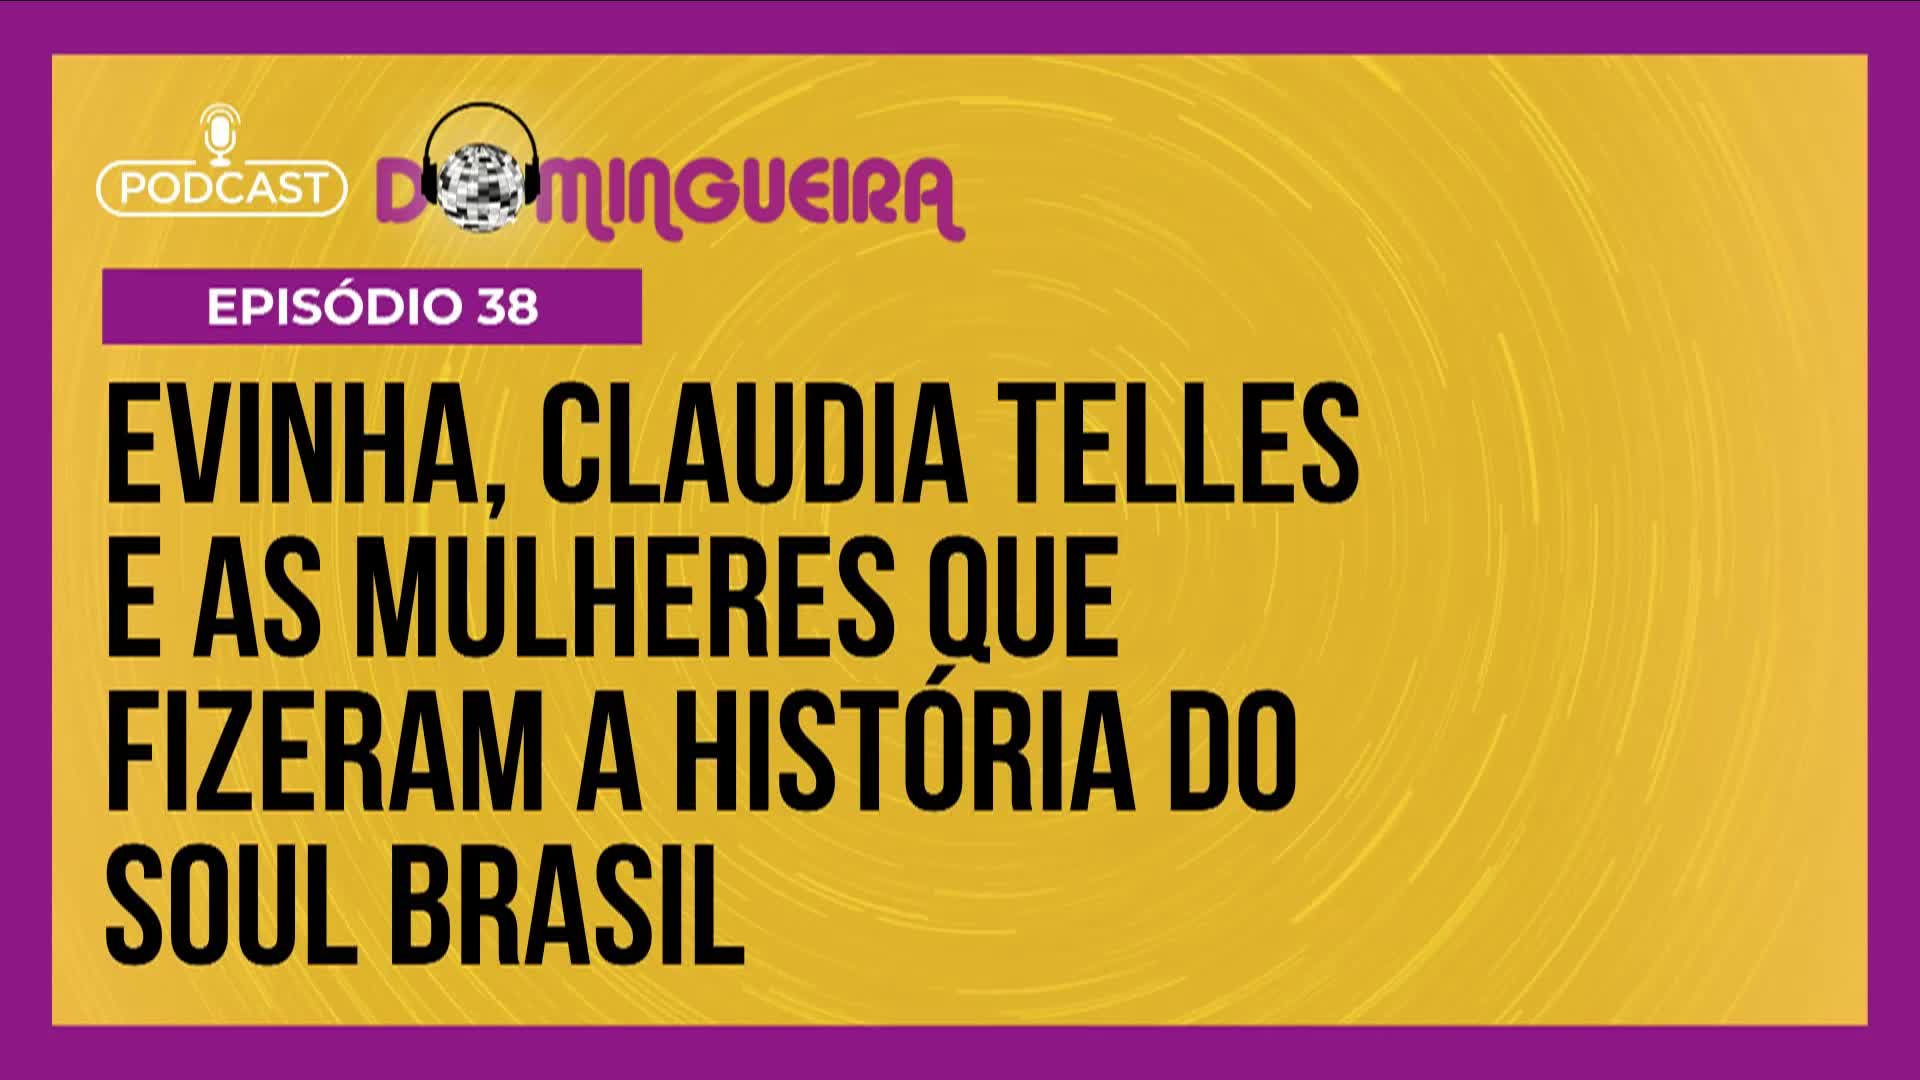 Vídeo: Podcast Domingueira : Evinha, Claudia Telles e as mulheres que fizeram história no Soul Brasil